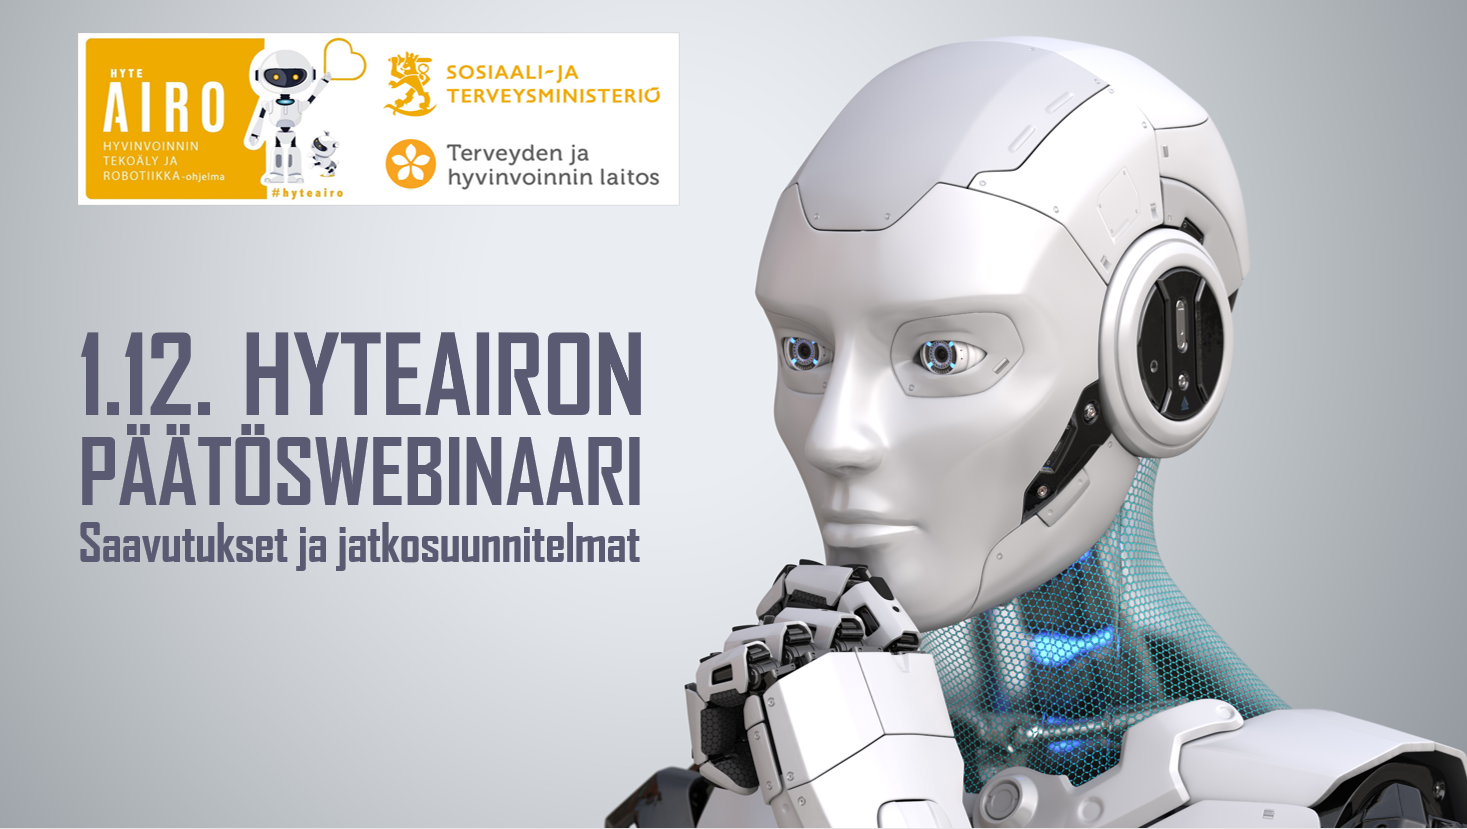 Hyteairon päätöswebinaari 1.12.2021 Saavutukset ja jatkosuunnitelmat. Hyteairo-ohjelman, STM:n ja THL:n logot, kuvassa miettivä humanoidi, logon kuvassa robotti ja koirarobotti.